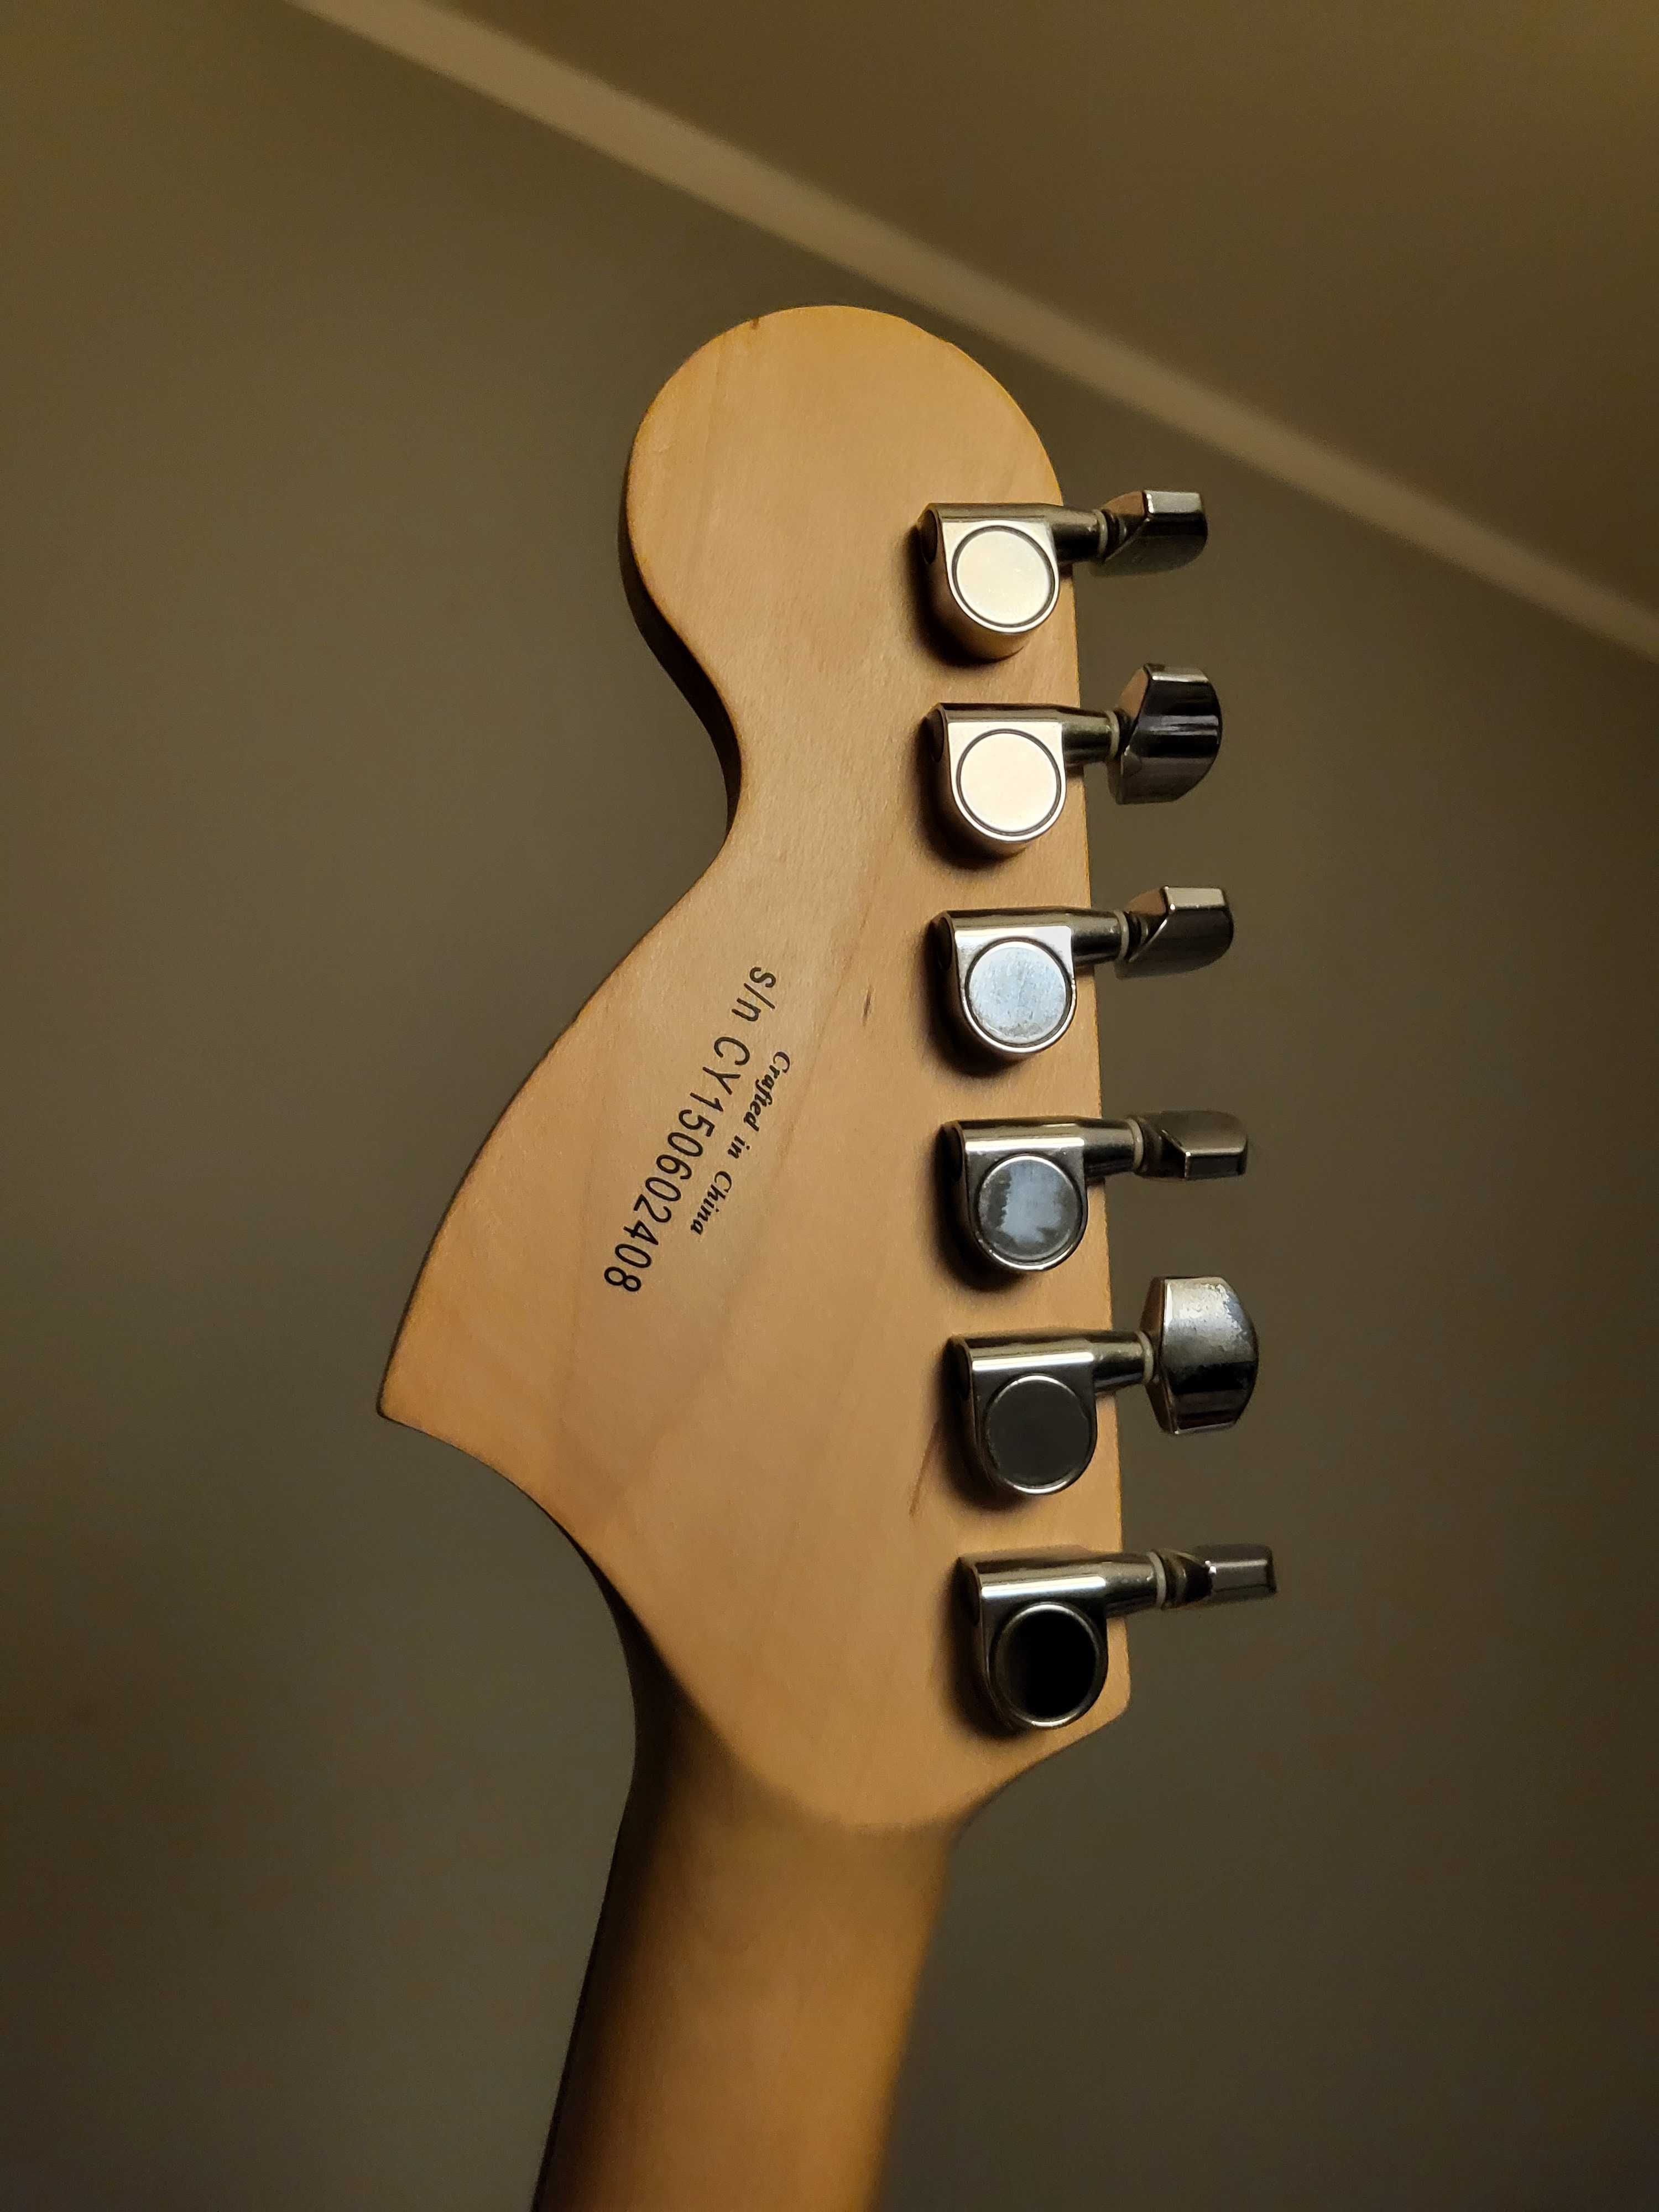 Squier by Fender Affinity 2015 Gitara Elektryczna Stratocaster